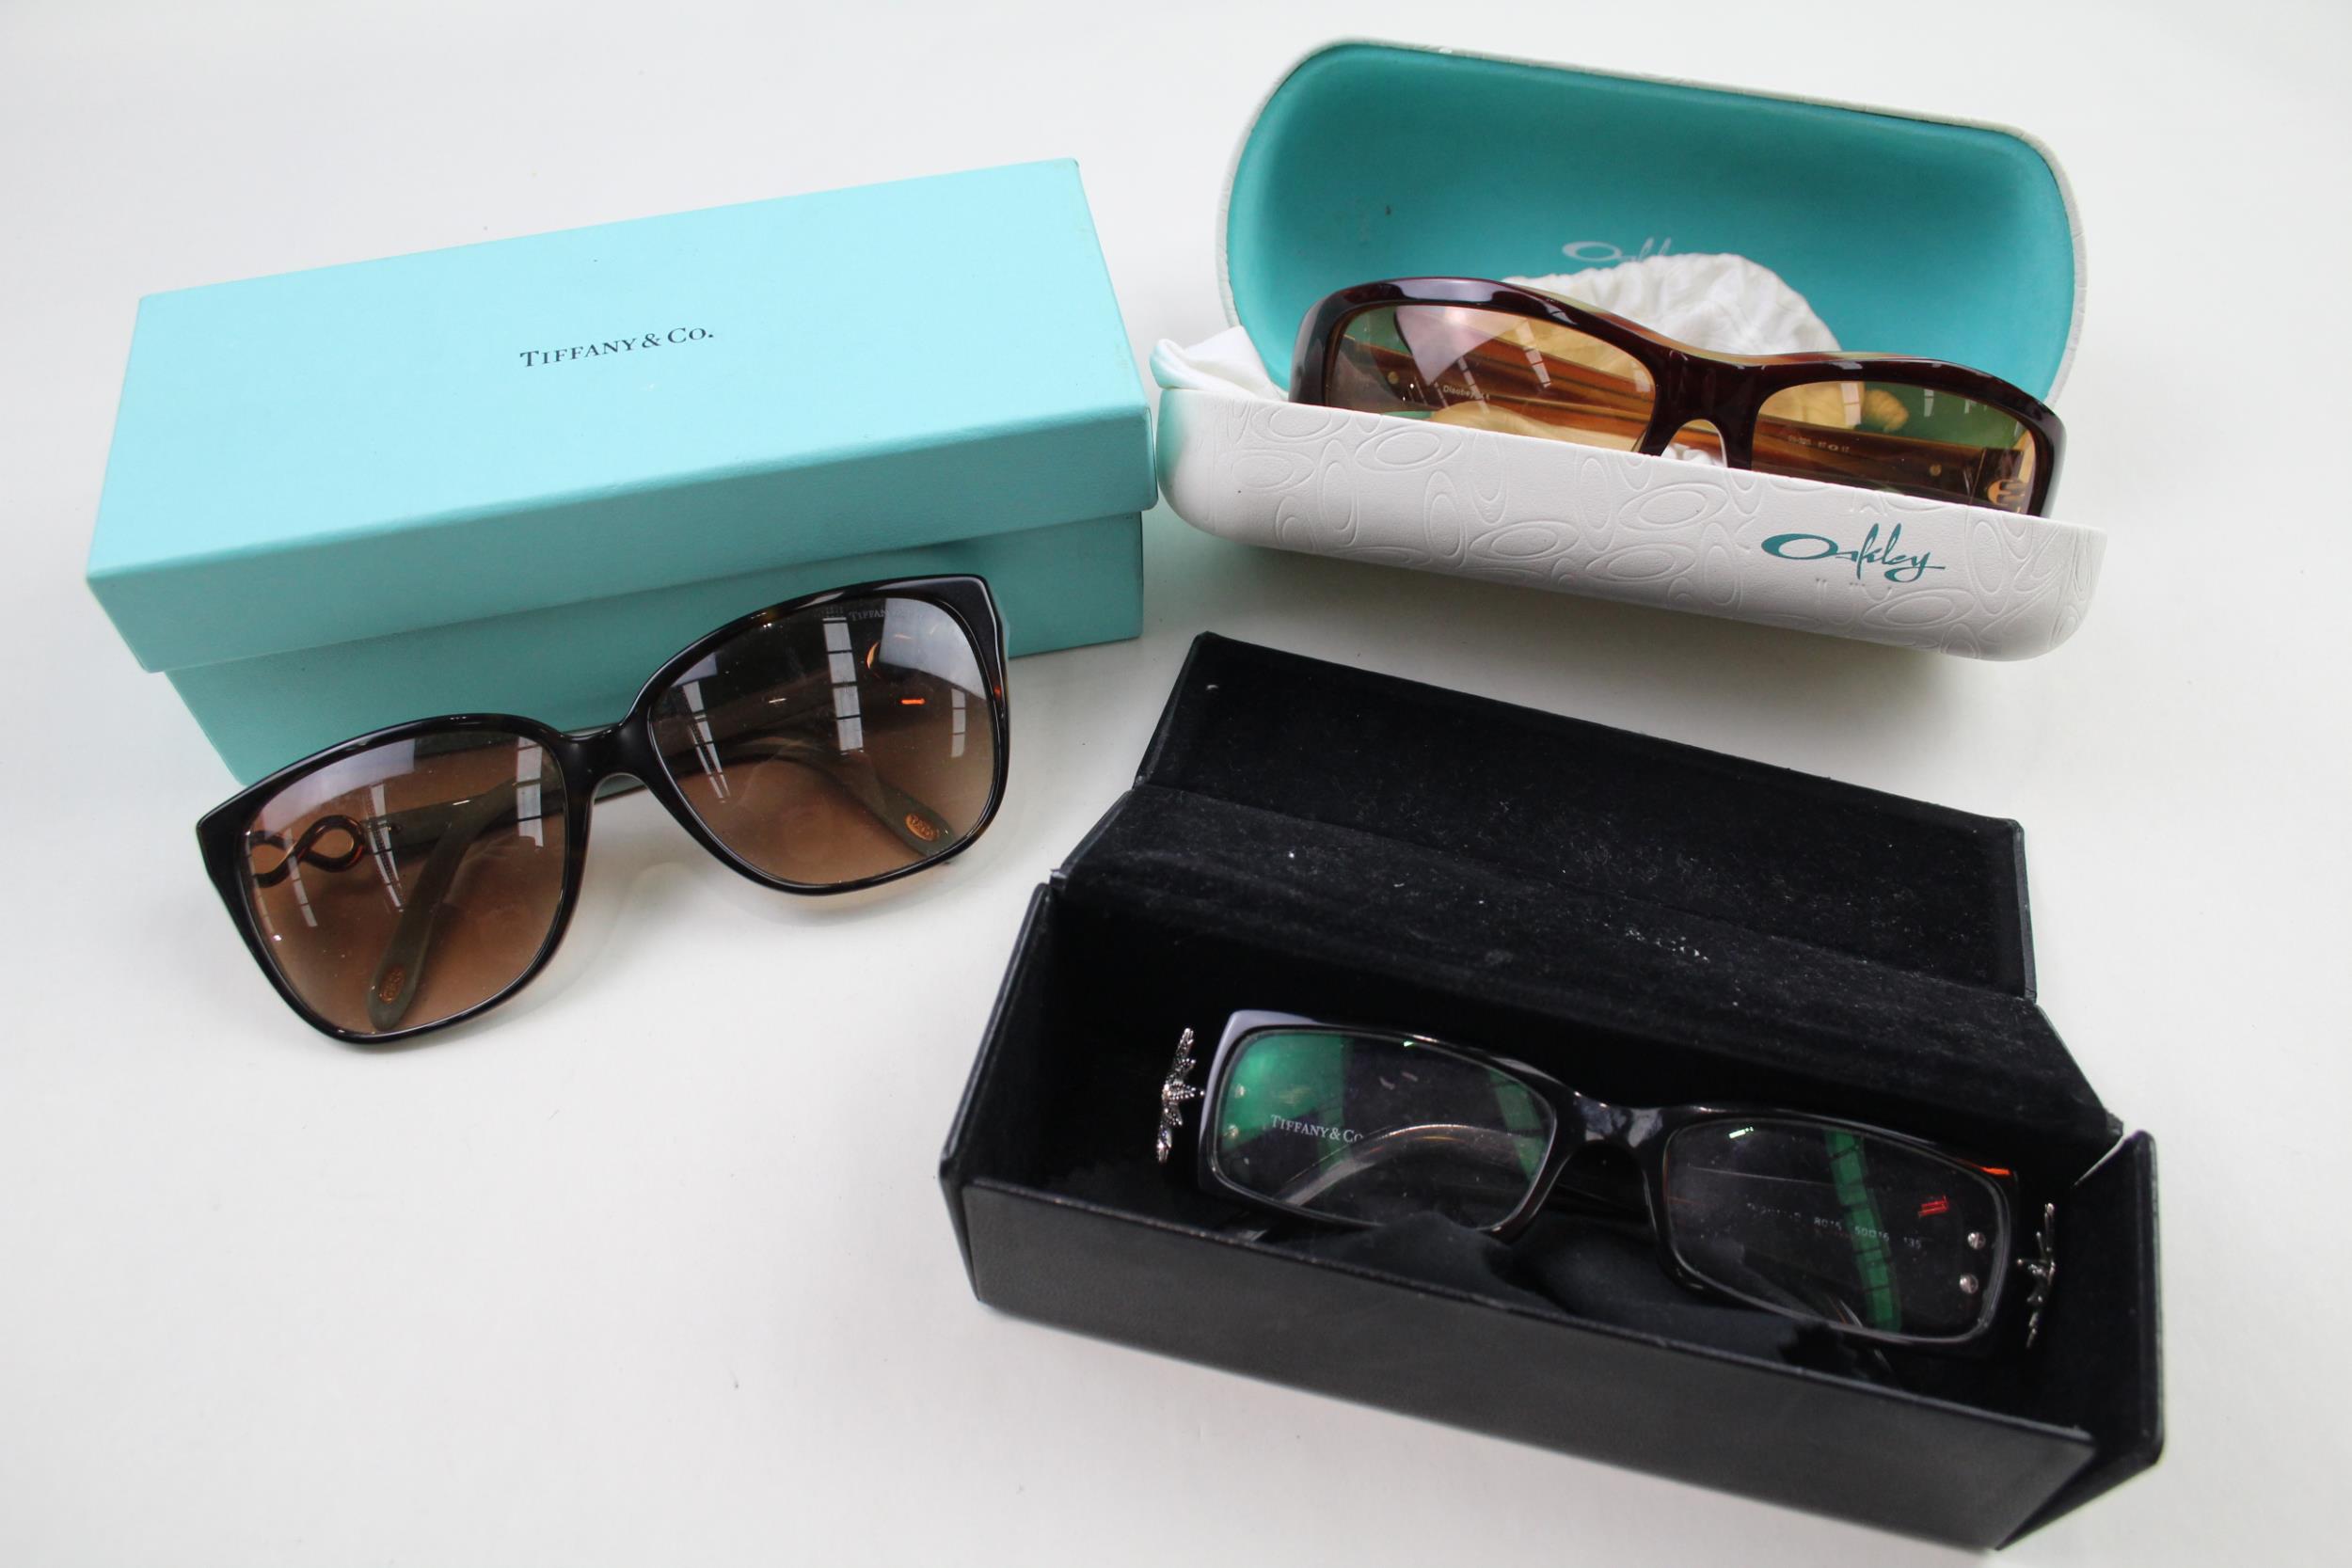 3 x Designer Sunglasses & Prescription Glasses Inc Tiffany & Co, Oakley, Case // Items are in